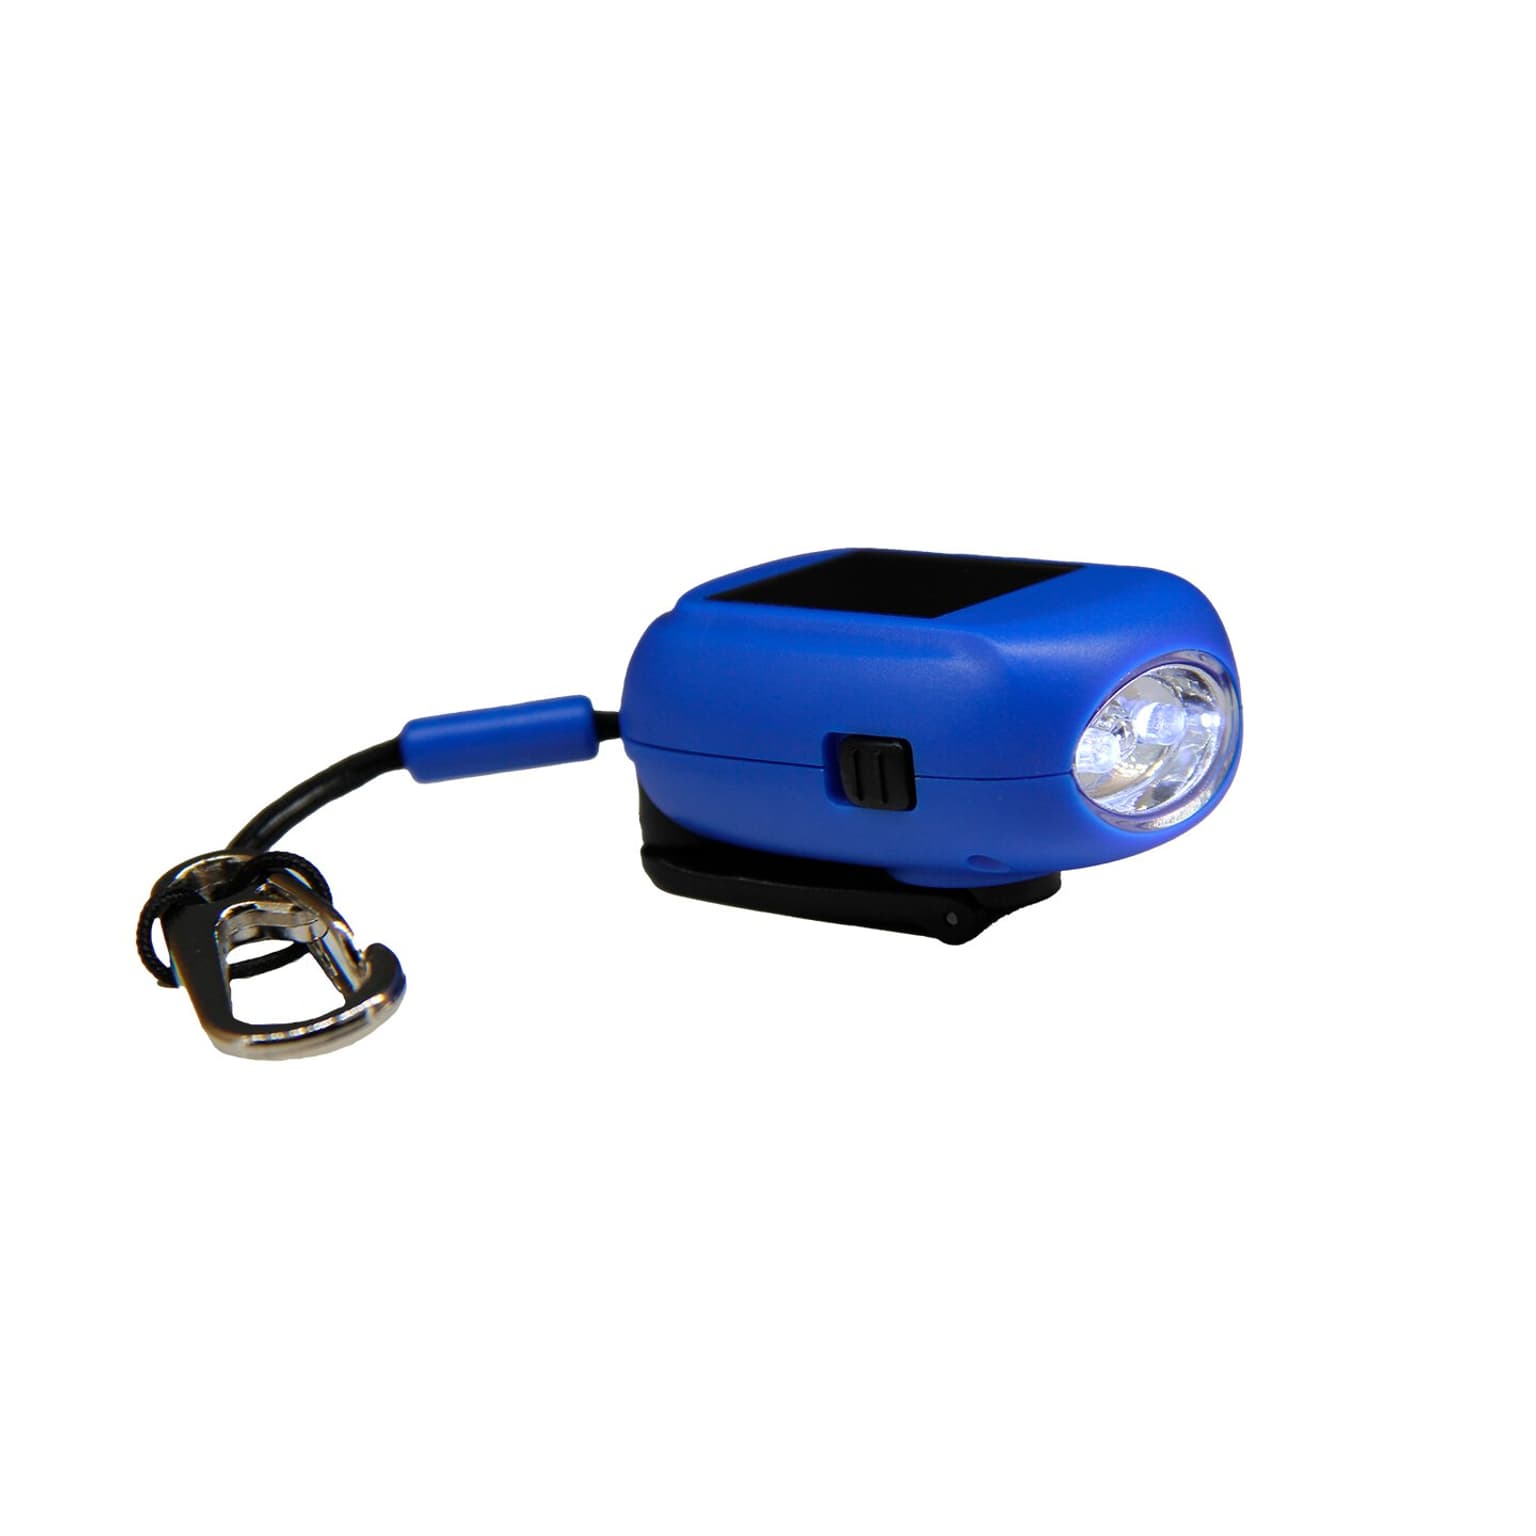 Essential Elements Essential Elements Mini Taschenlampe Recycled inkl. Karabiner Taschenlampe blau 1